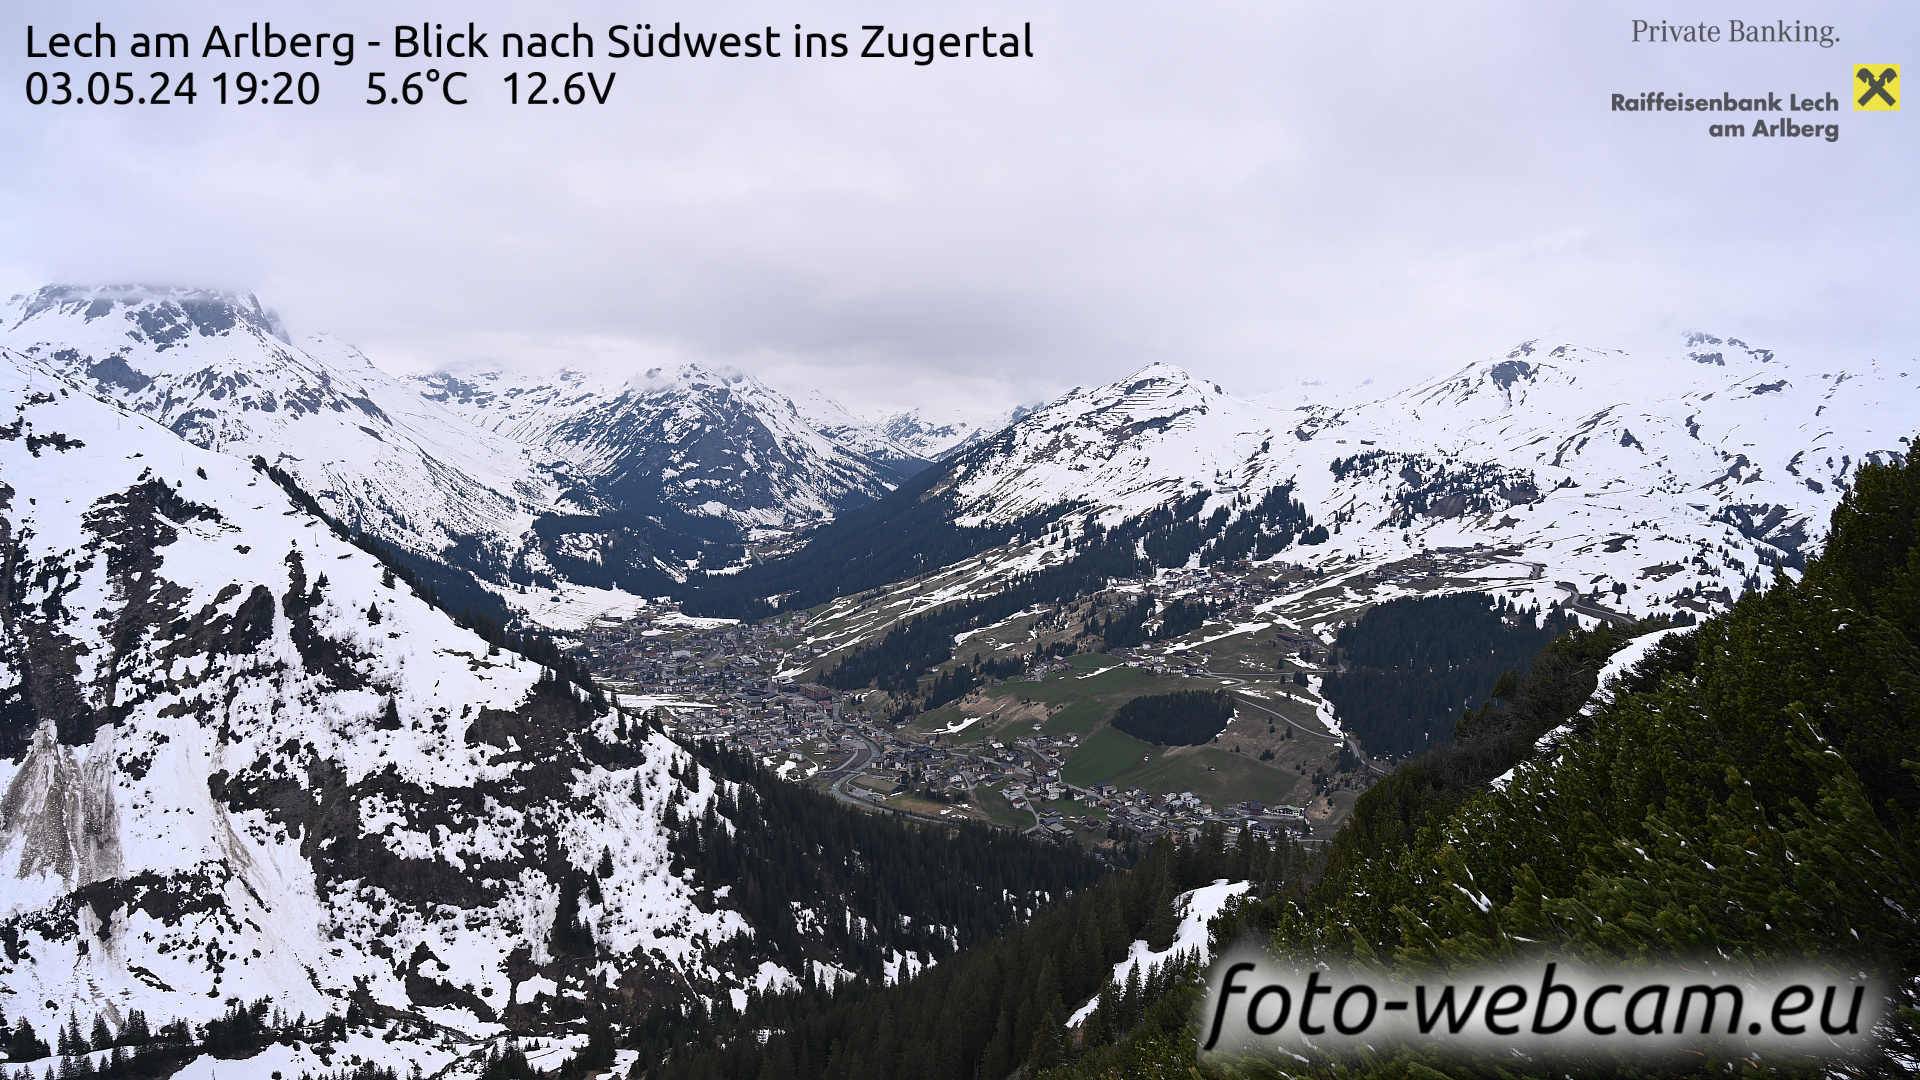 Lech am Arlberg Tue. 19:31